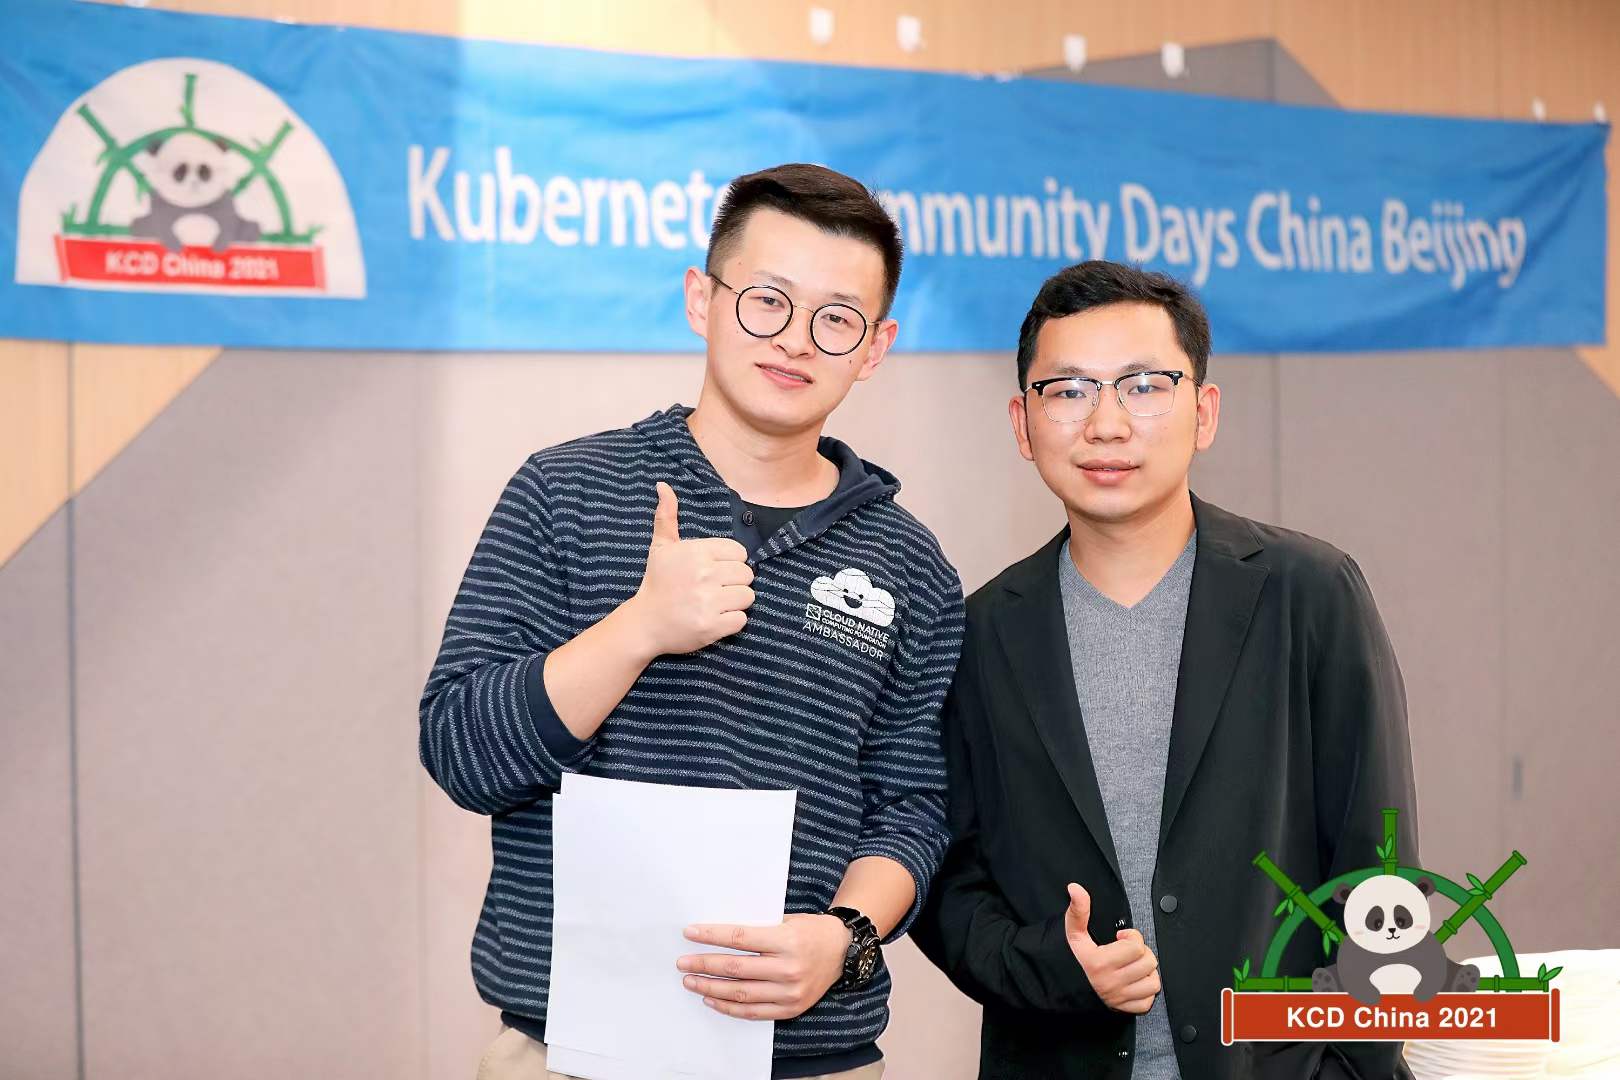 Kubernetes Community Days China